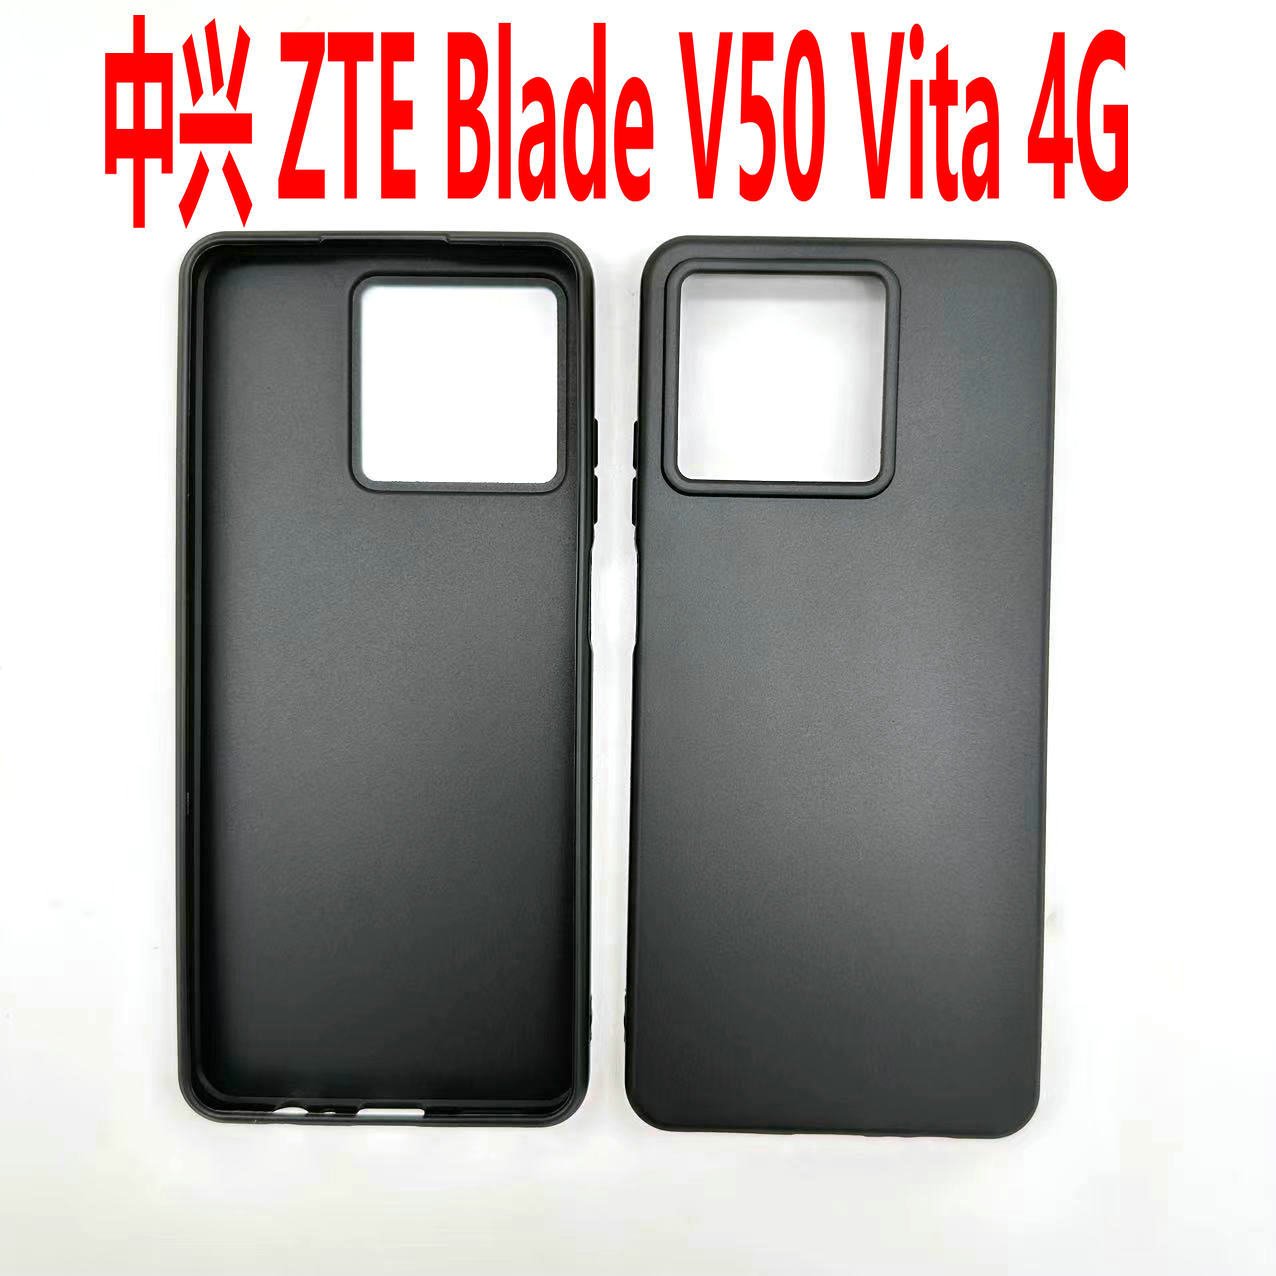 适用于中兴 ZTE Blade V50 Vita 4G手机壳TPU全磨砂皮套彩绘素材